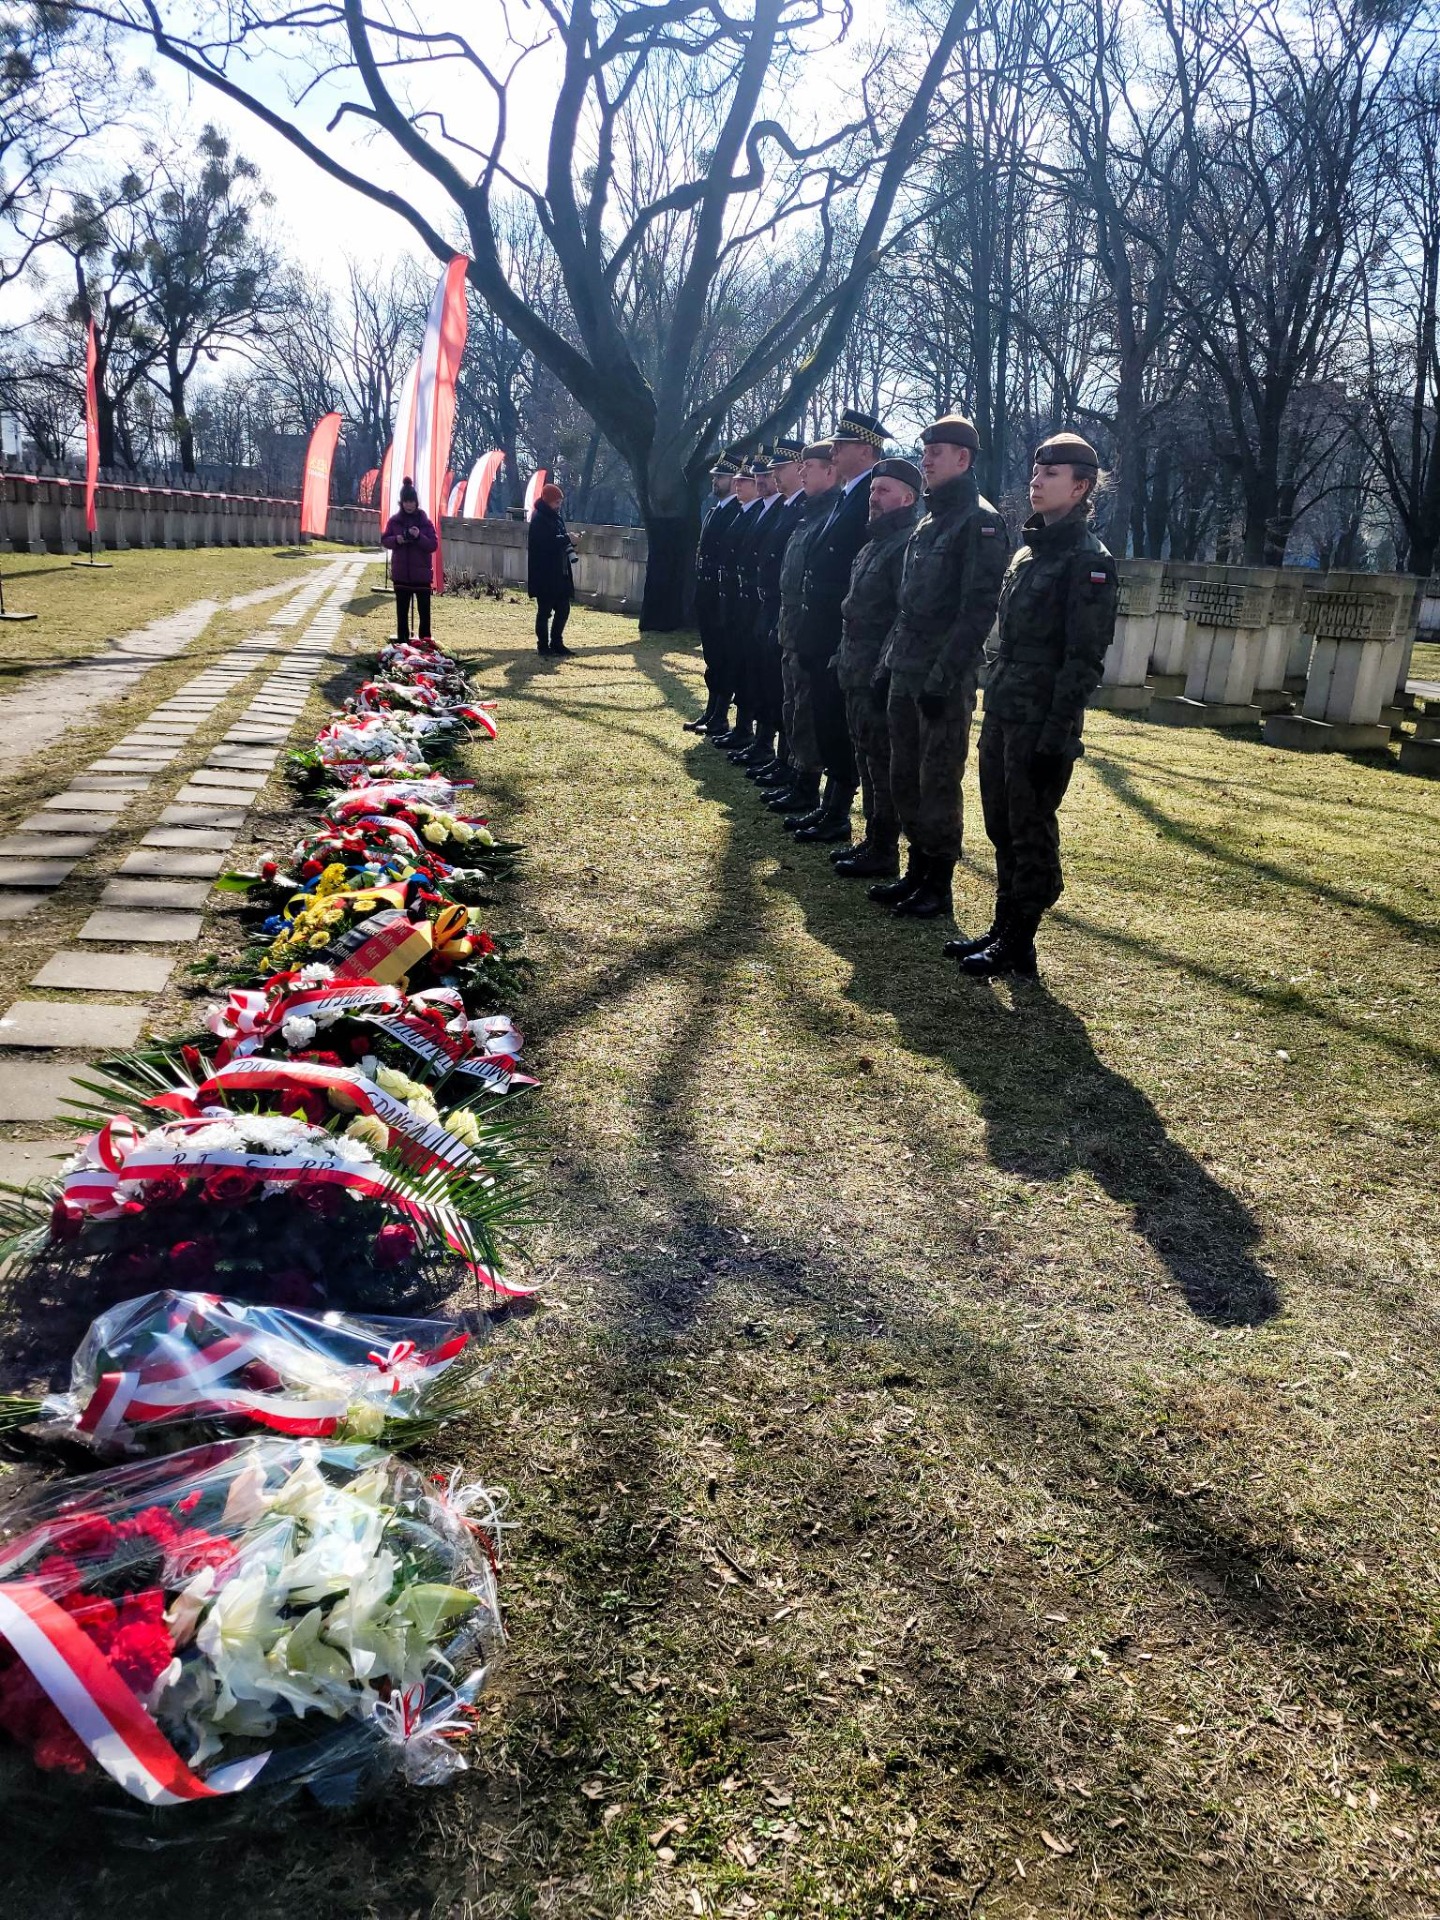 Przy pomniku „W hołdzie ofiarom – Polonii Gdańskiej” zgromadziły się rodziny pomordowanych gdańskich Polaków, przedstawiciele władz miasta i organizacji zrzeszających potomków patriotów z Wolnego Miasta. Podczas uroczystości nasza szkoła była reprezentowana przez Poczet Sztandarowy